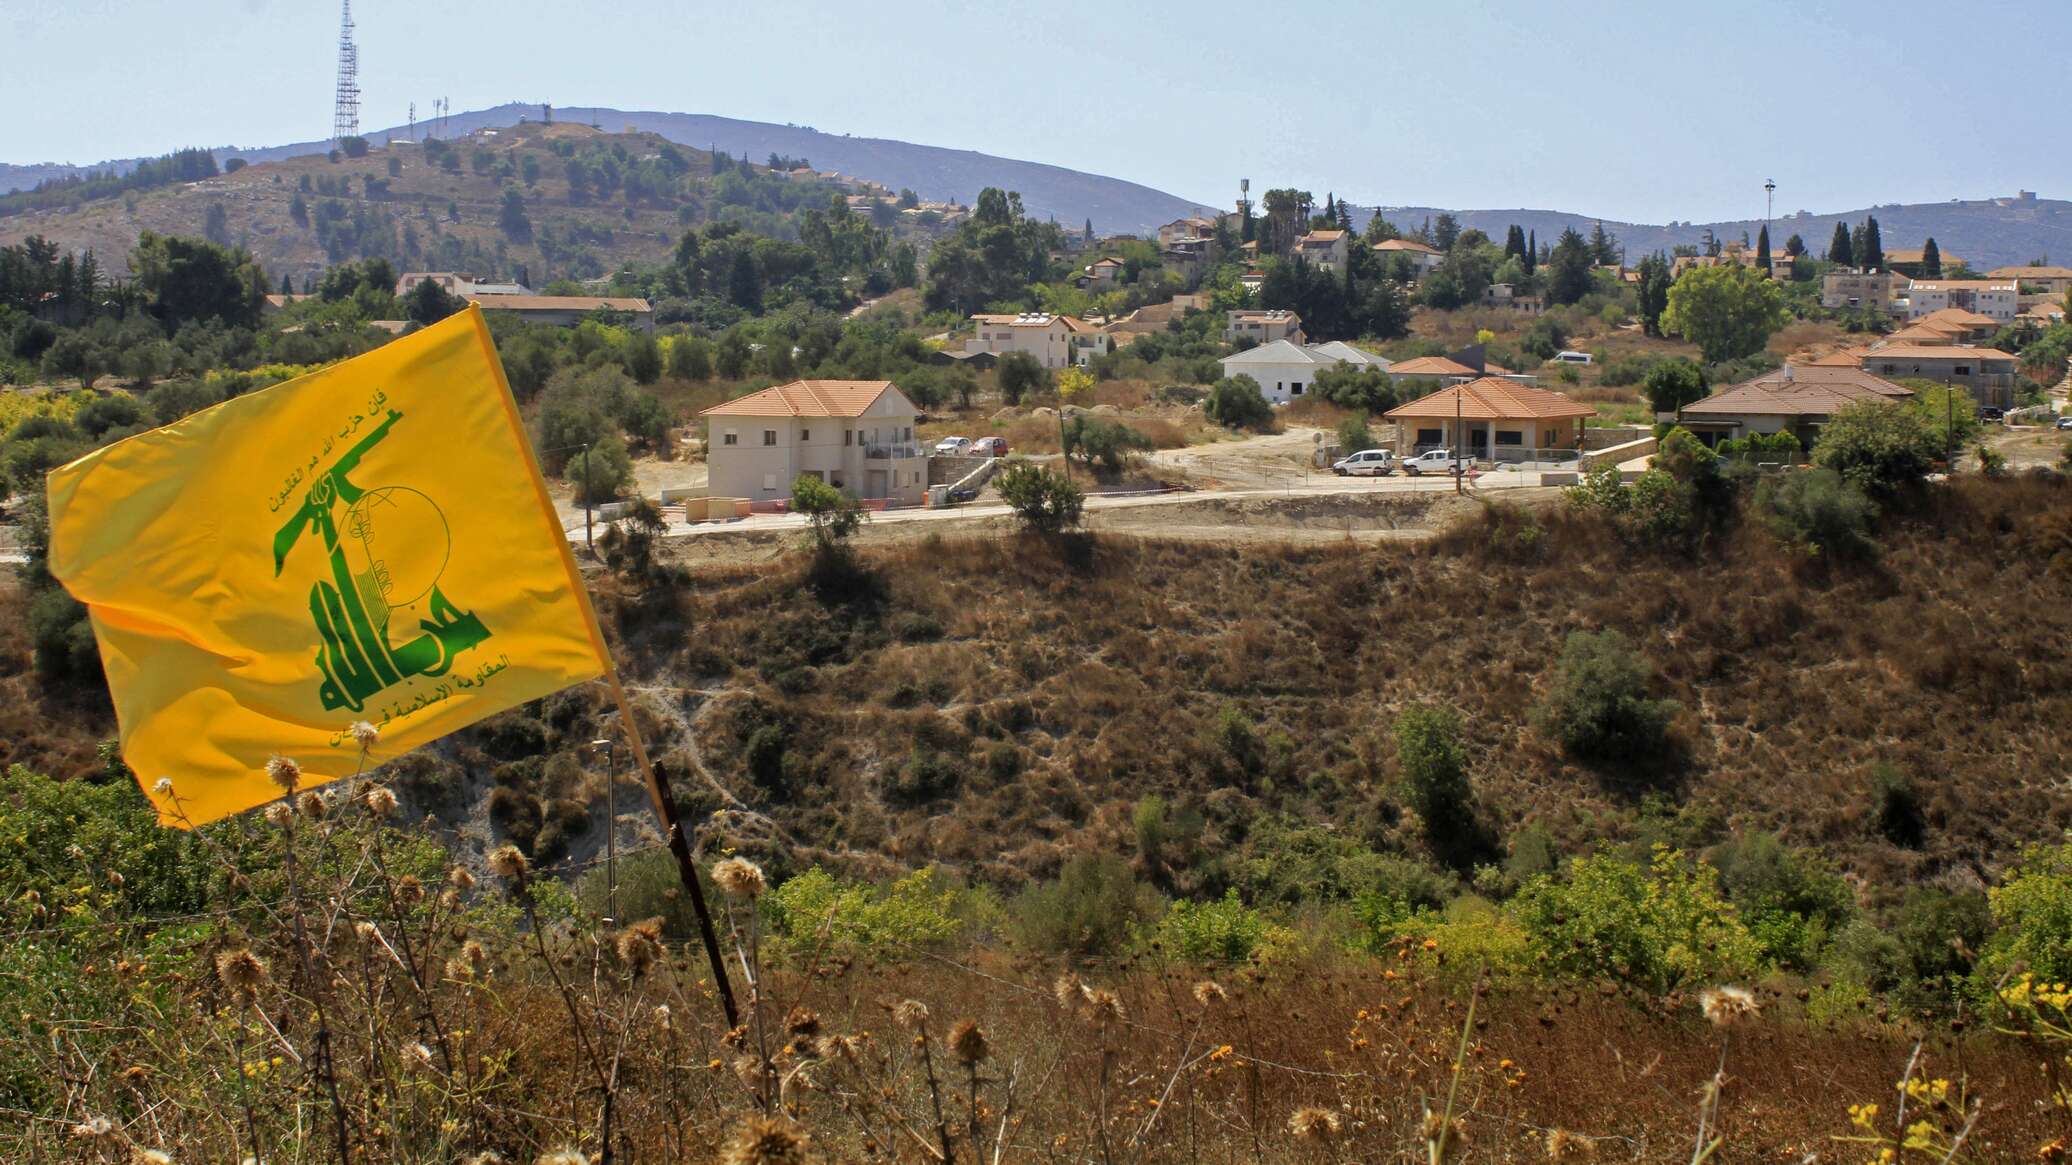 نائب في كتلة "حزب الله": عملية المقاومة أمر طبيعي وهي ضد الاحتلال في الأراضي اللبنانية المحتلة